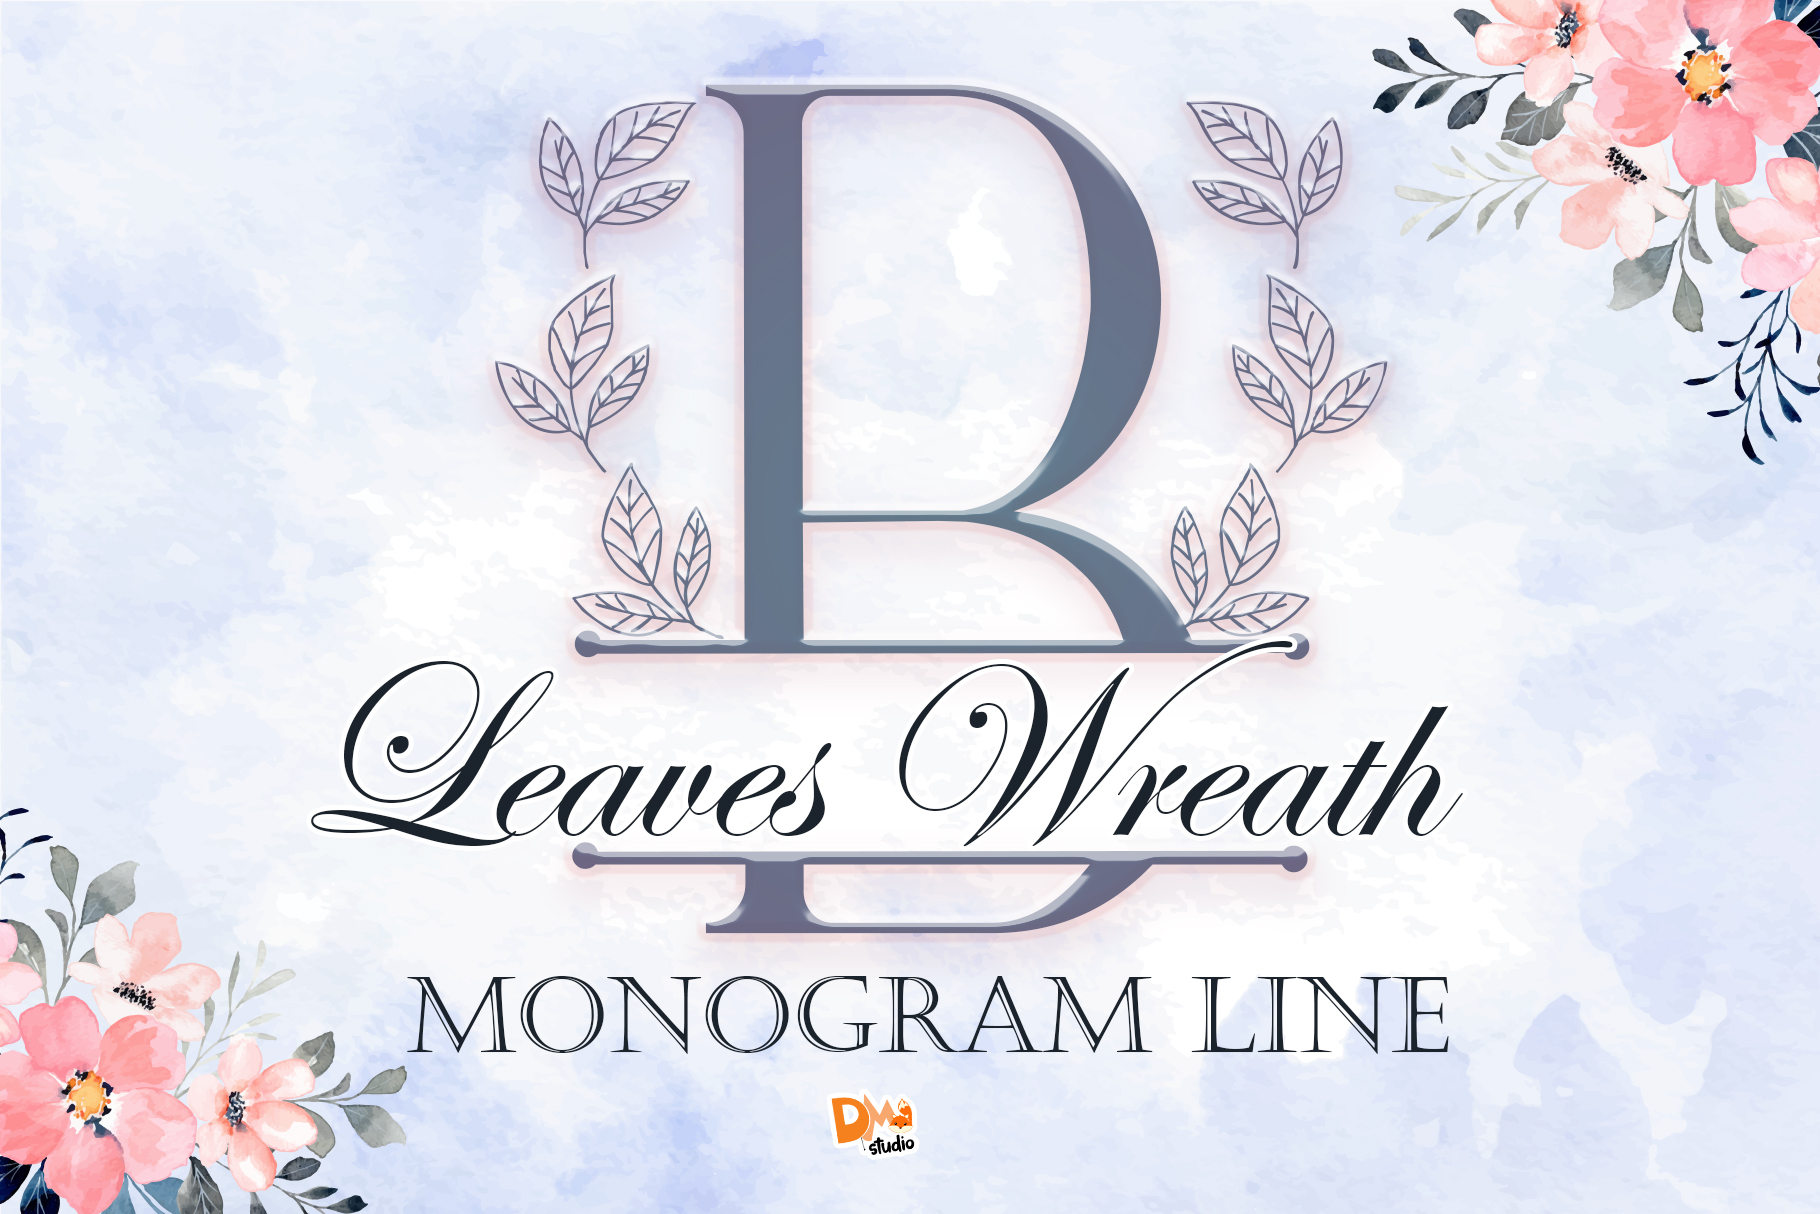 Leaves Wreath Monogram Line